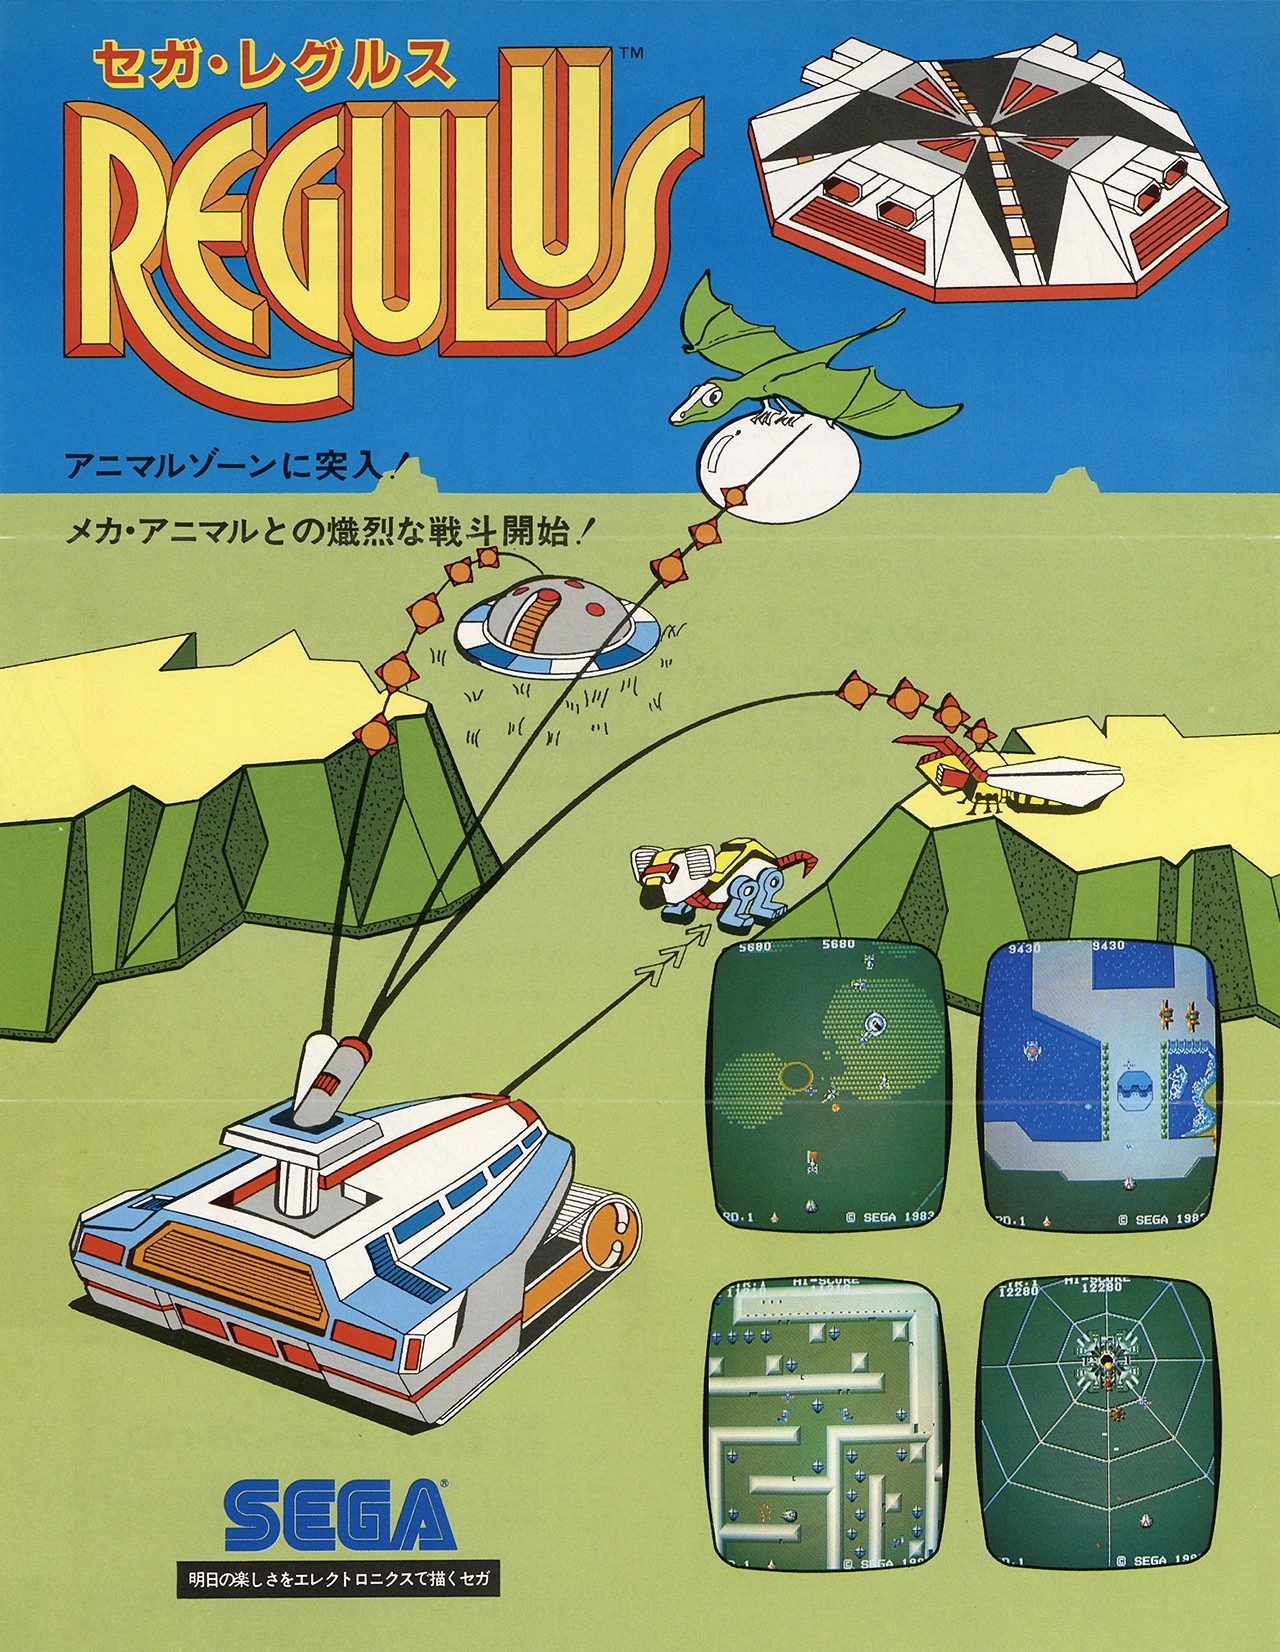 Capa do jogo Regulus